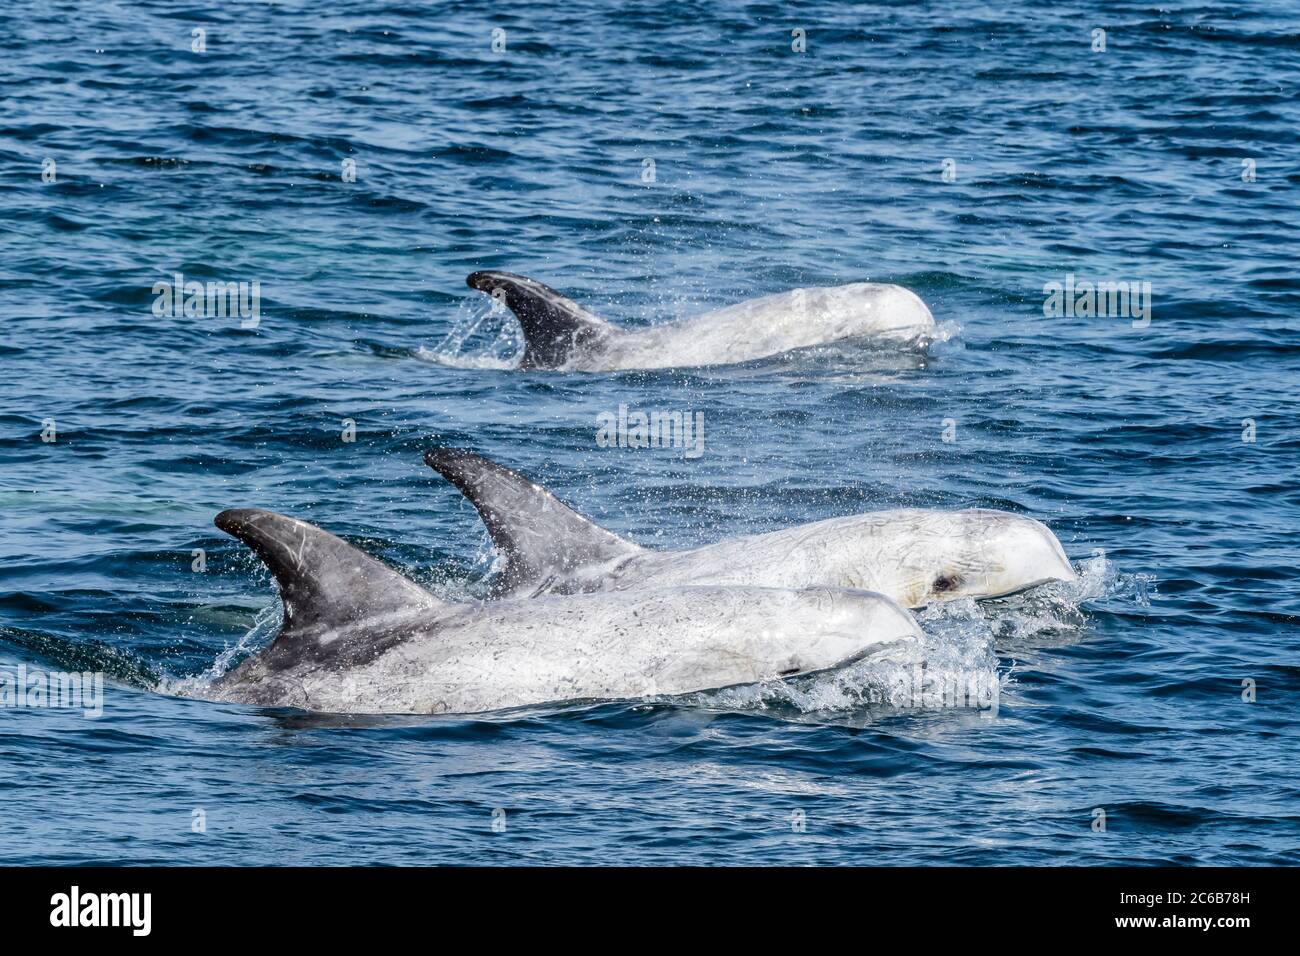 Dauphins de Risso adultes (Grampus griseus) faisant face au sanctuaire marin national de la baie de Monterey, Californie, États-Unis d'Amérique, Amérique du Nord Banque D'Images